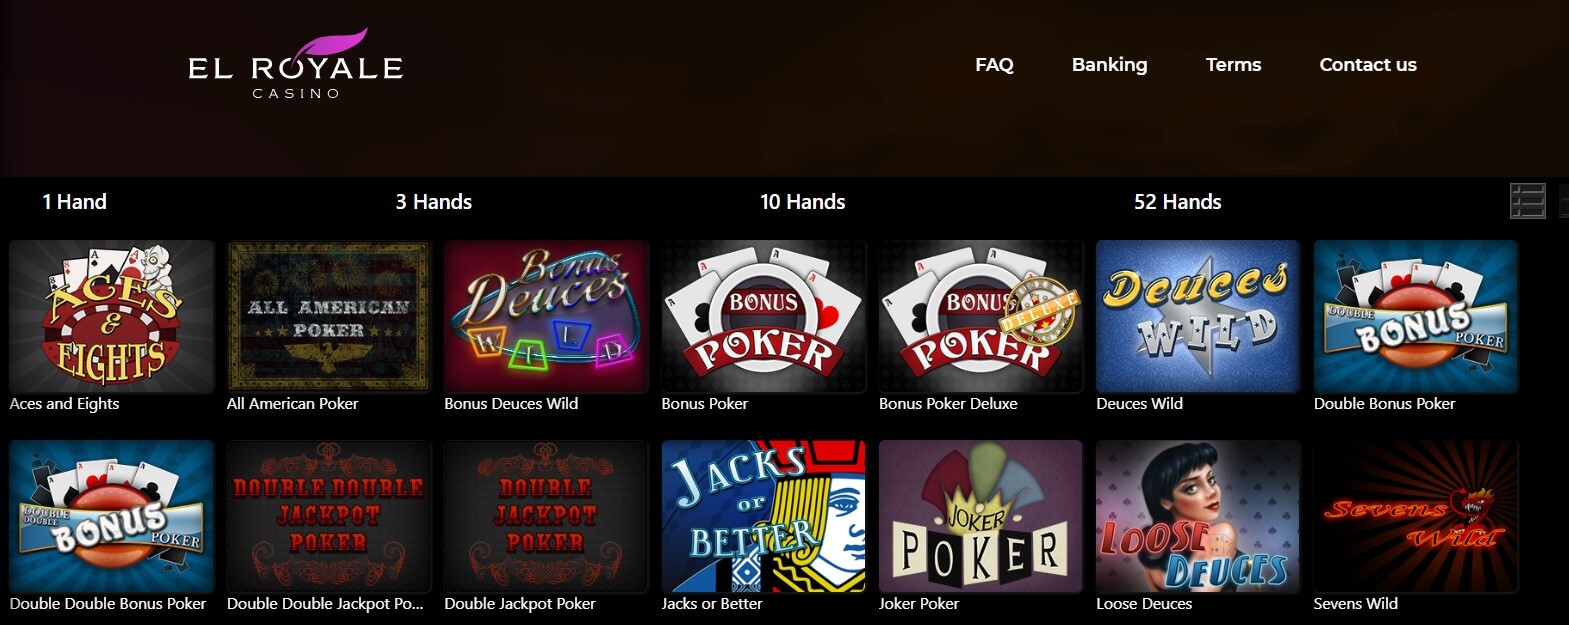 El Royale Online Poker Games